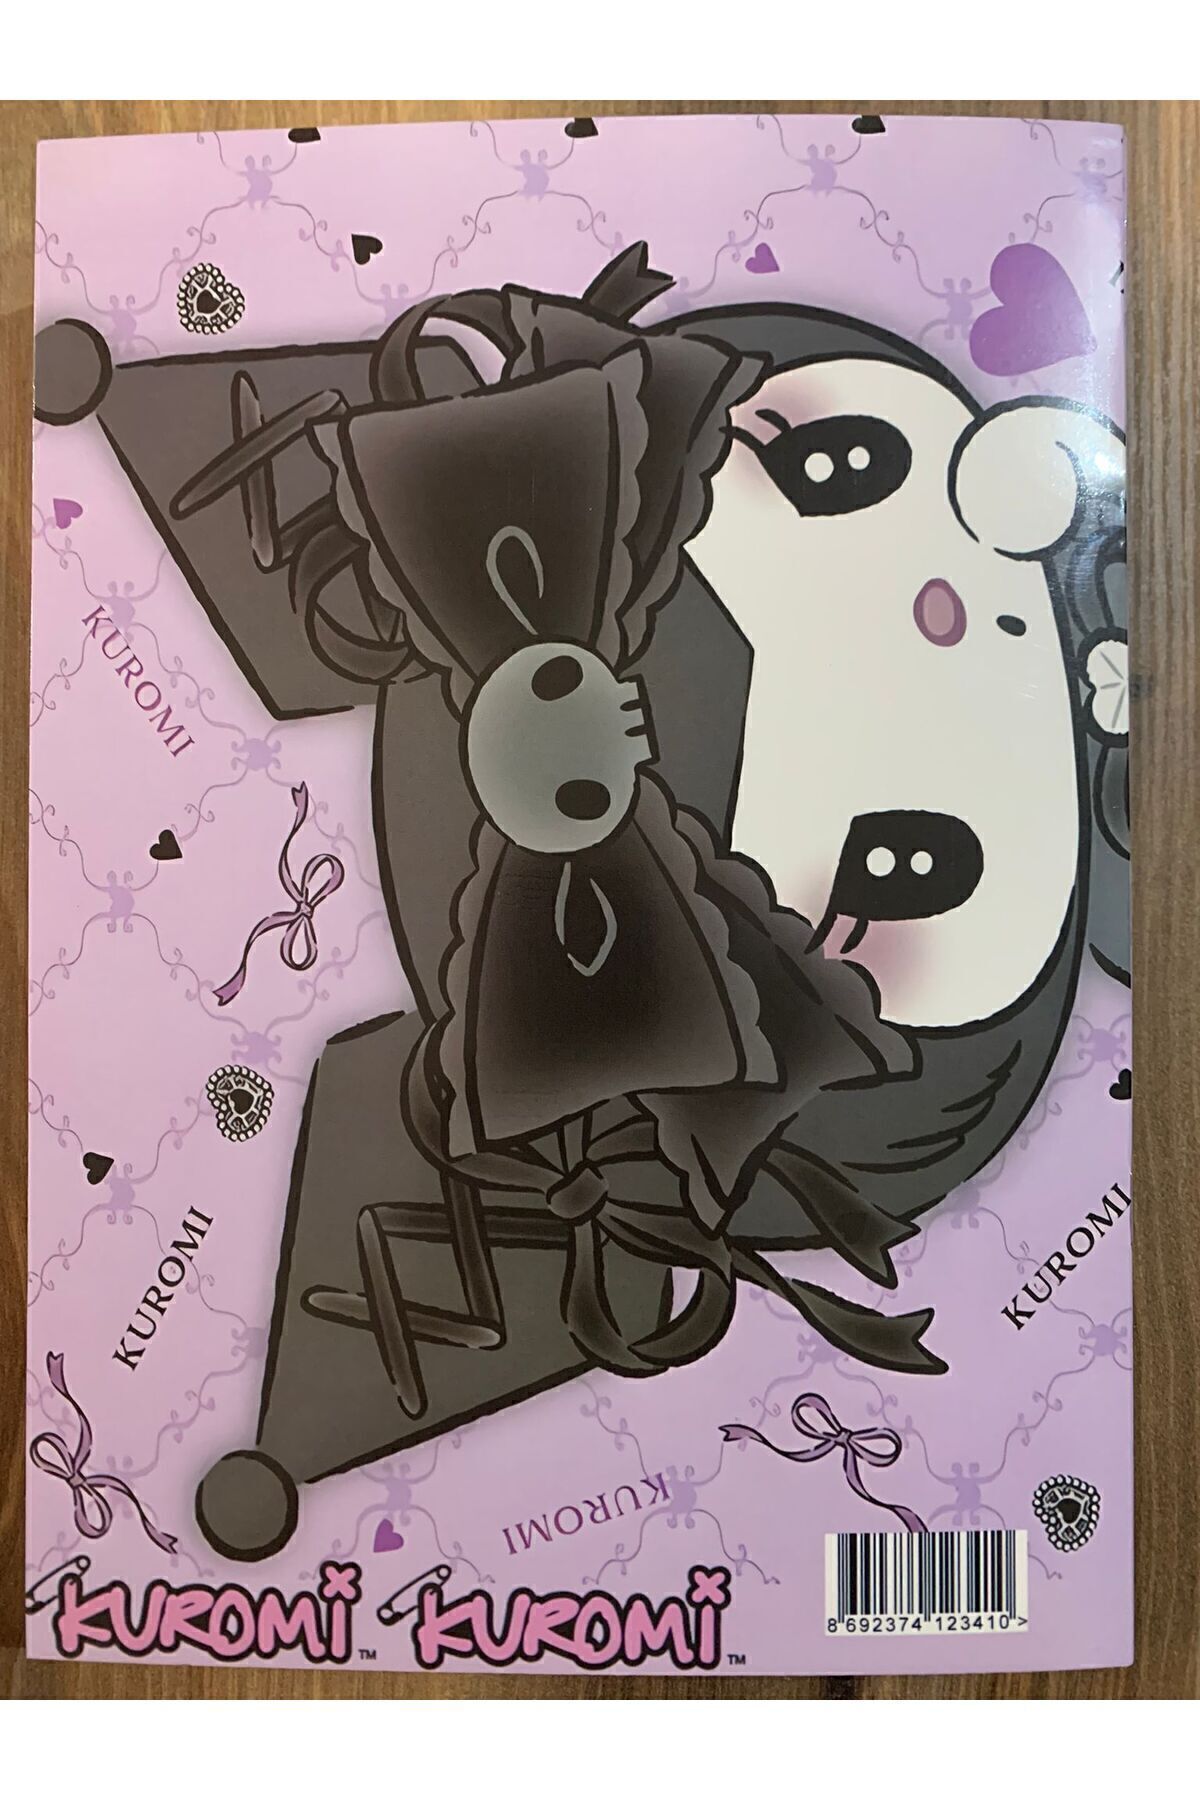 İYİ MODA My Melody Kuromi 16 sayfa Boyama Kitabı Sticker Maske Seti